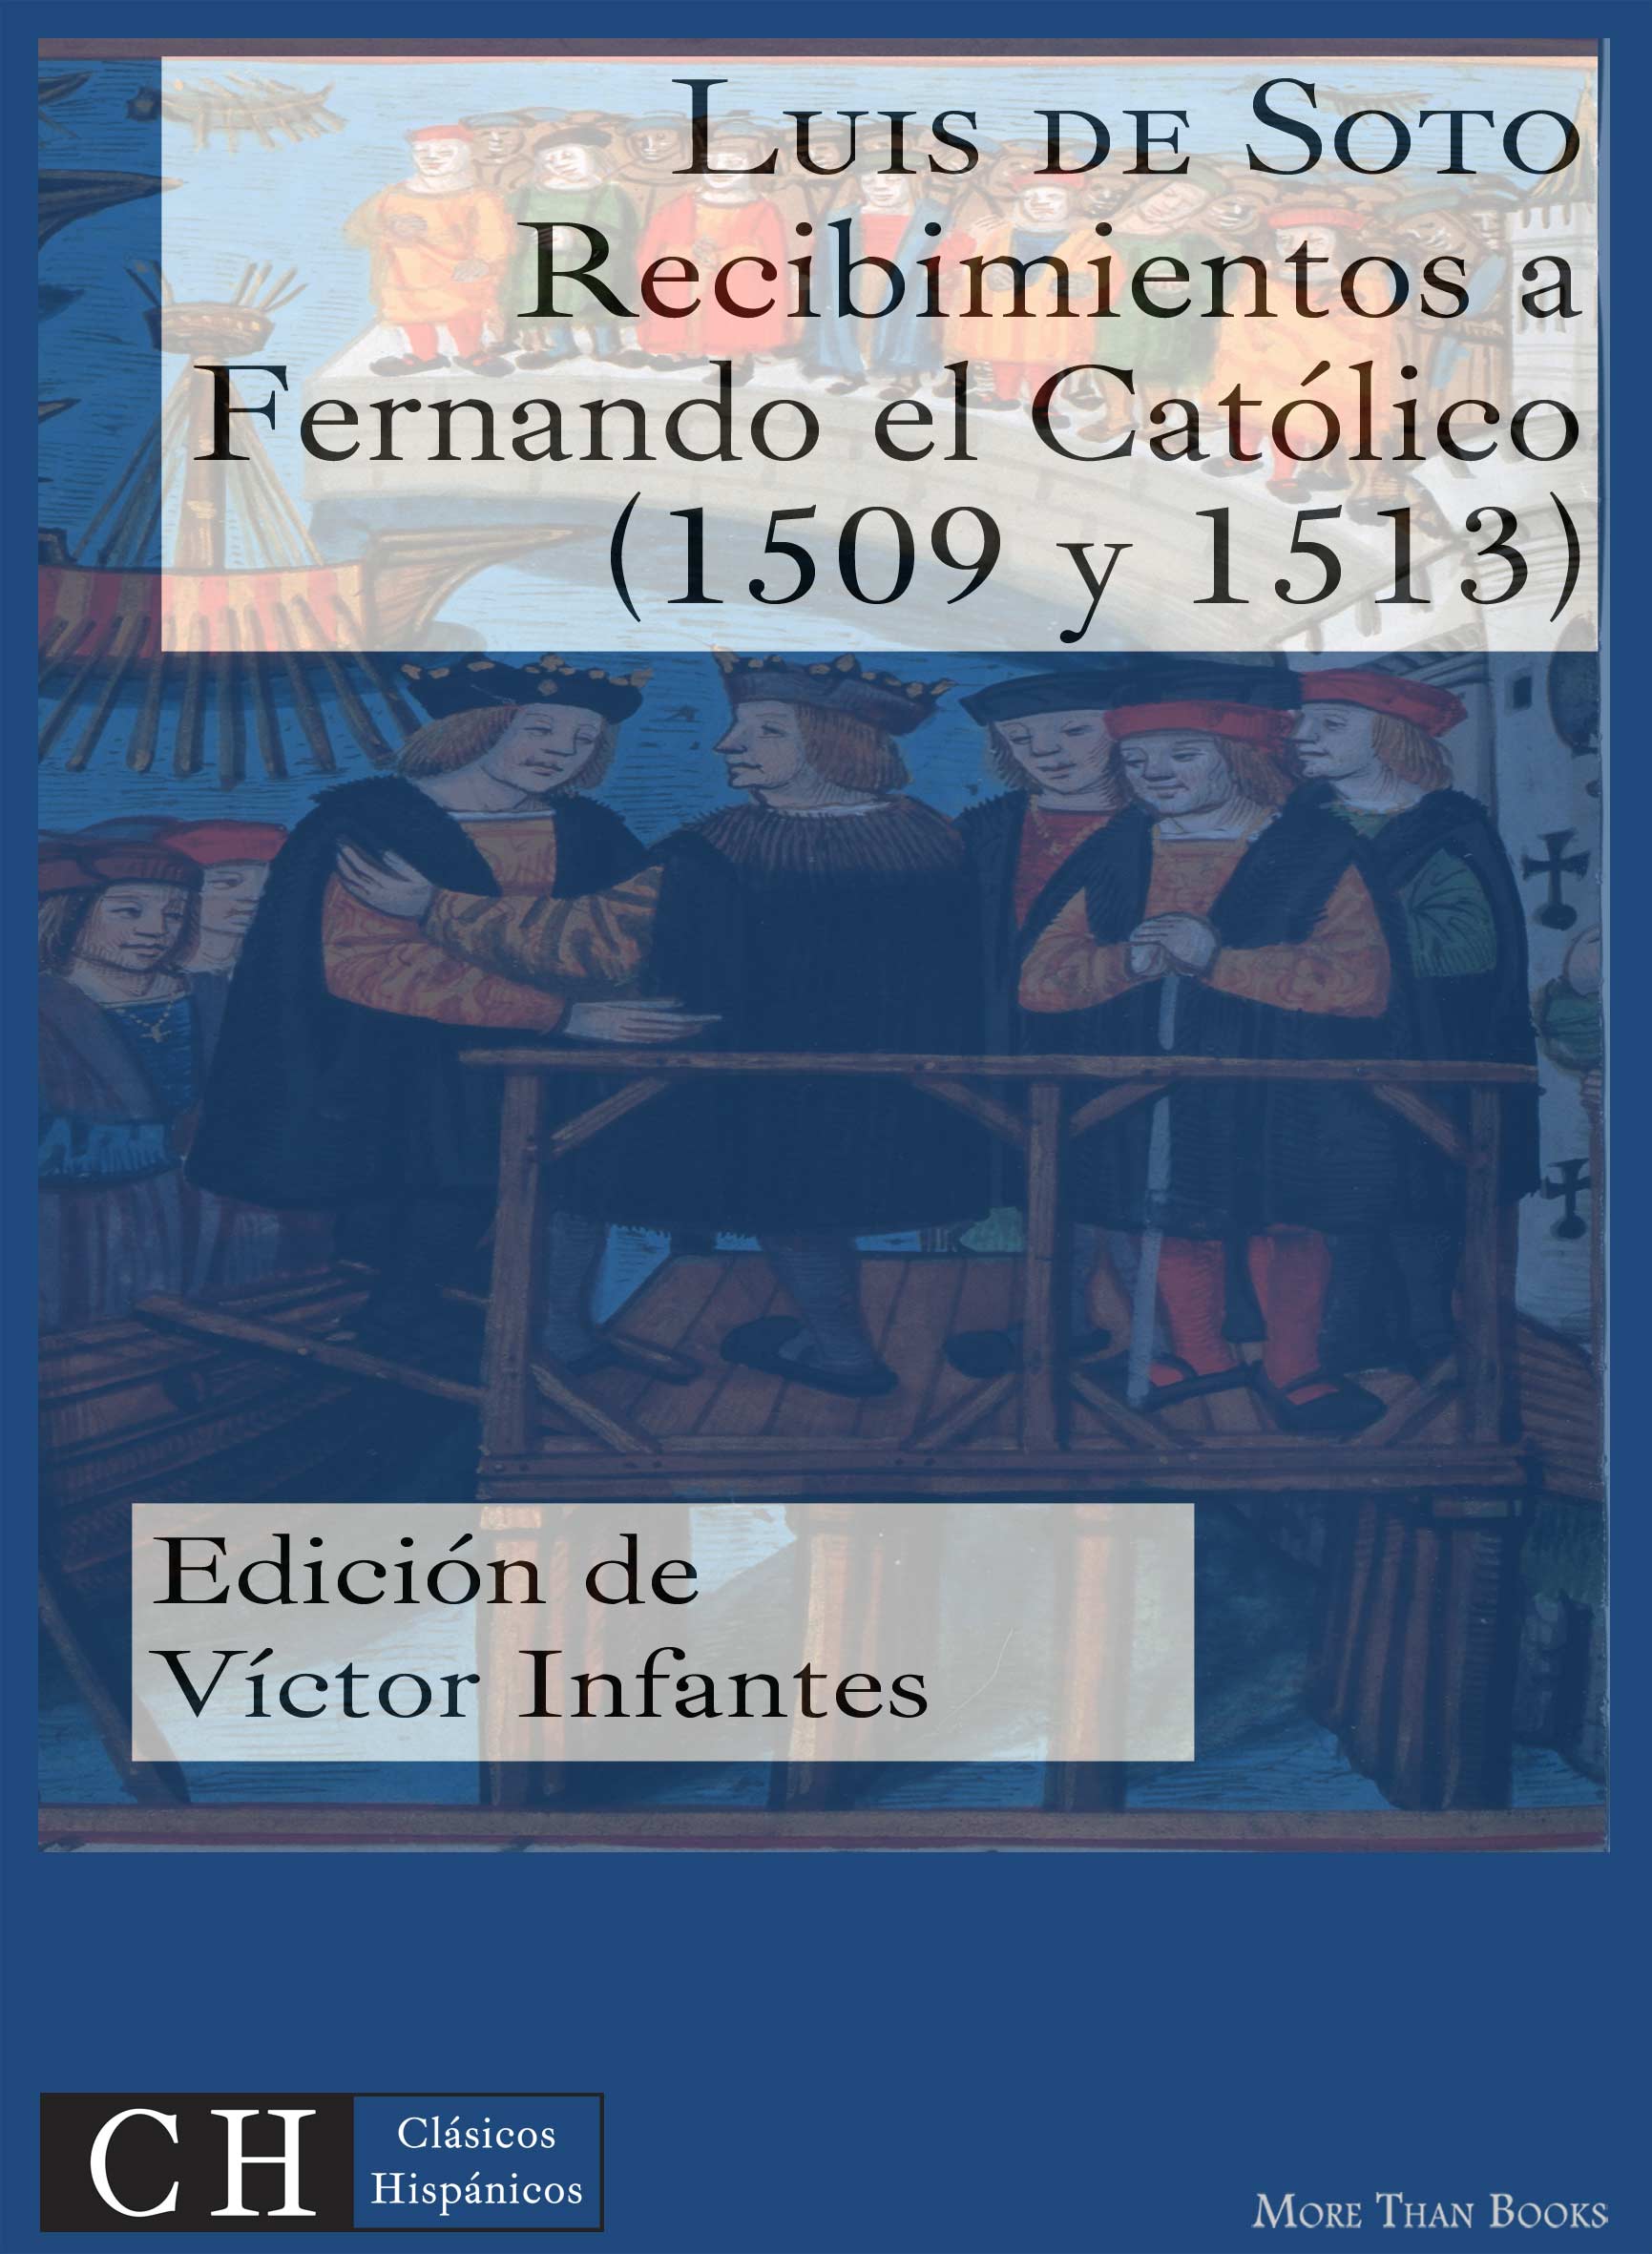 Imagen de portada del libro Recibimientos a Fernando el Católico